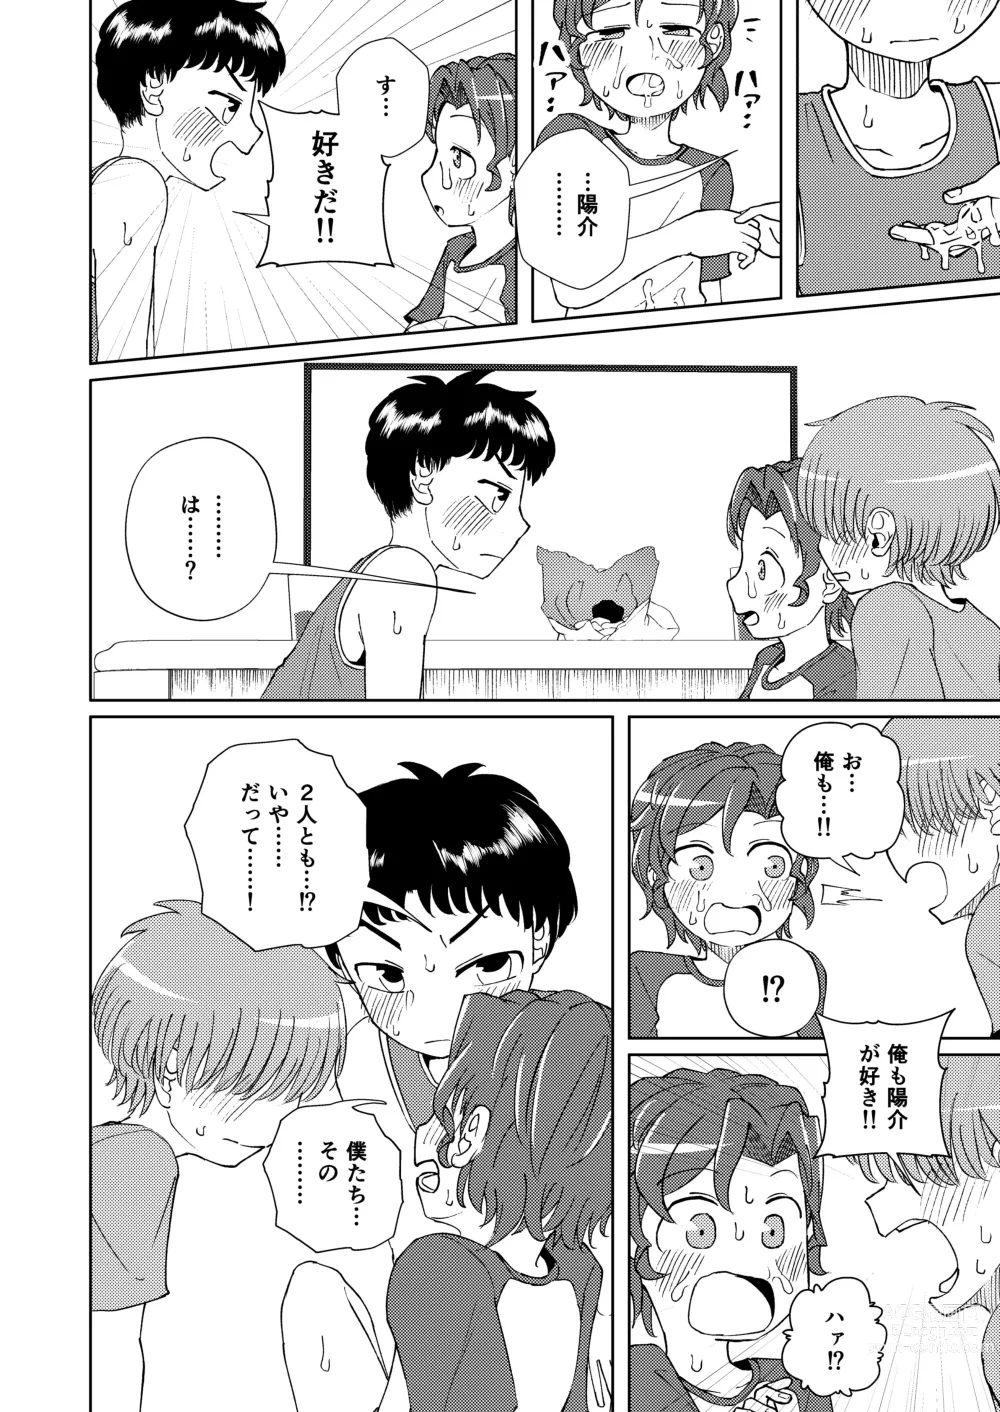 Page 28 of doujinshi Shoujiki Iu to,